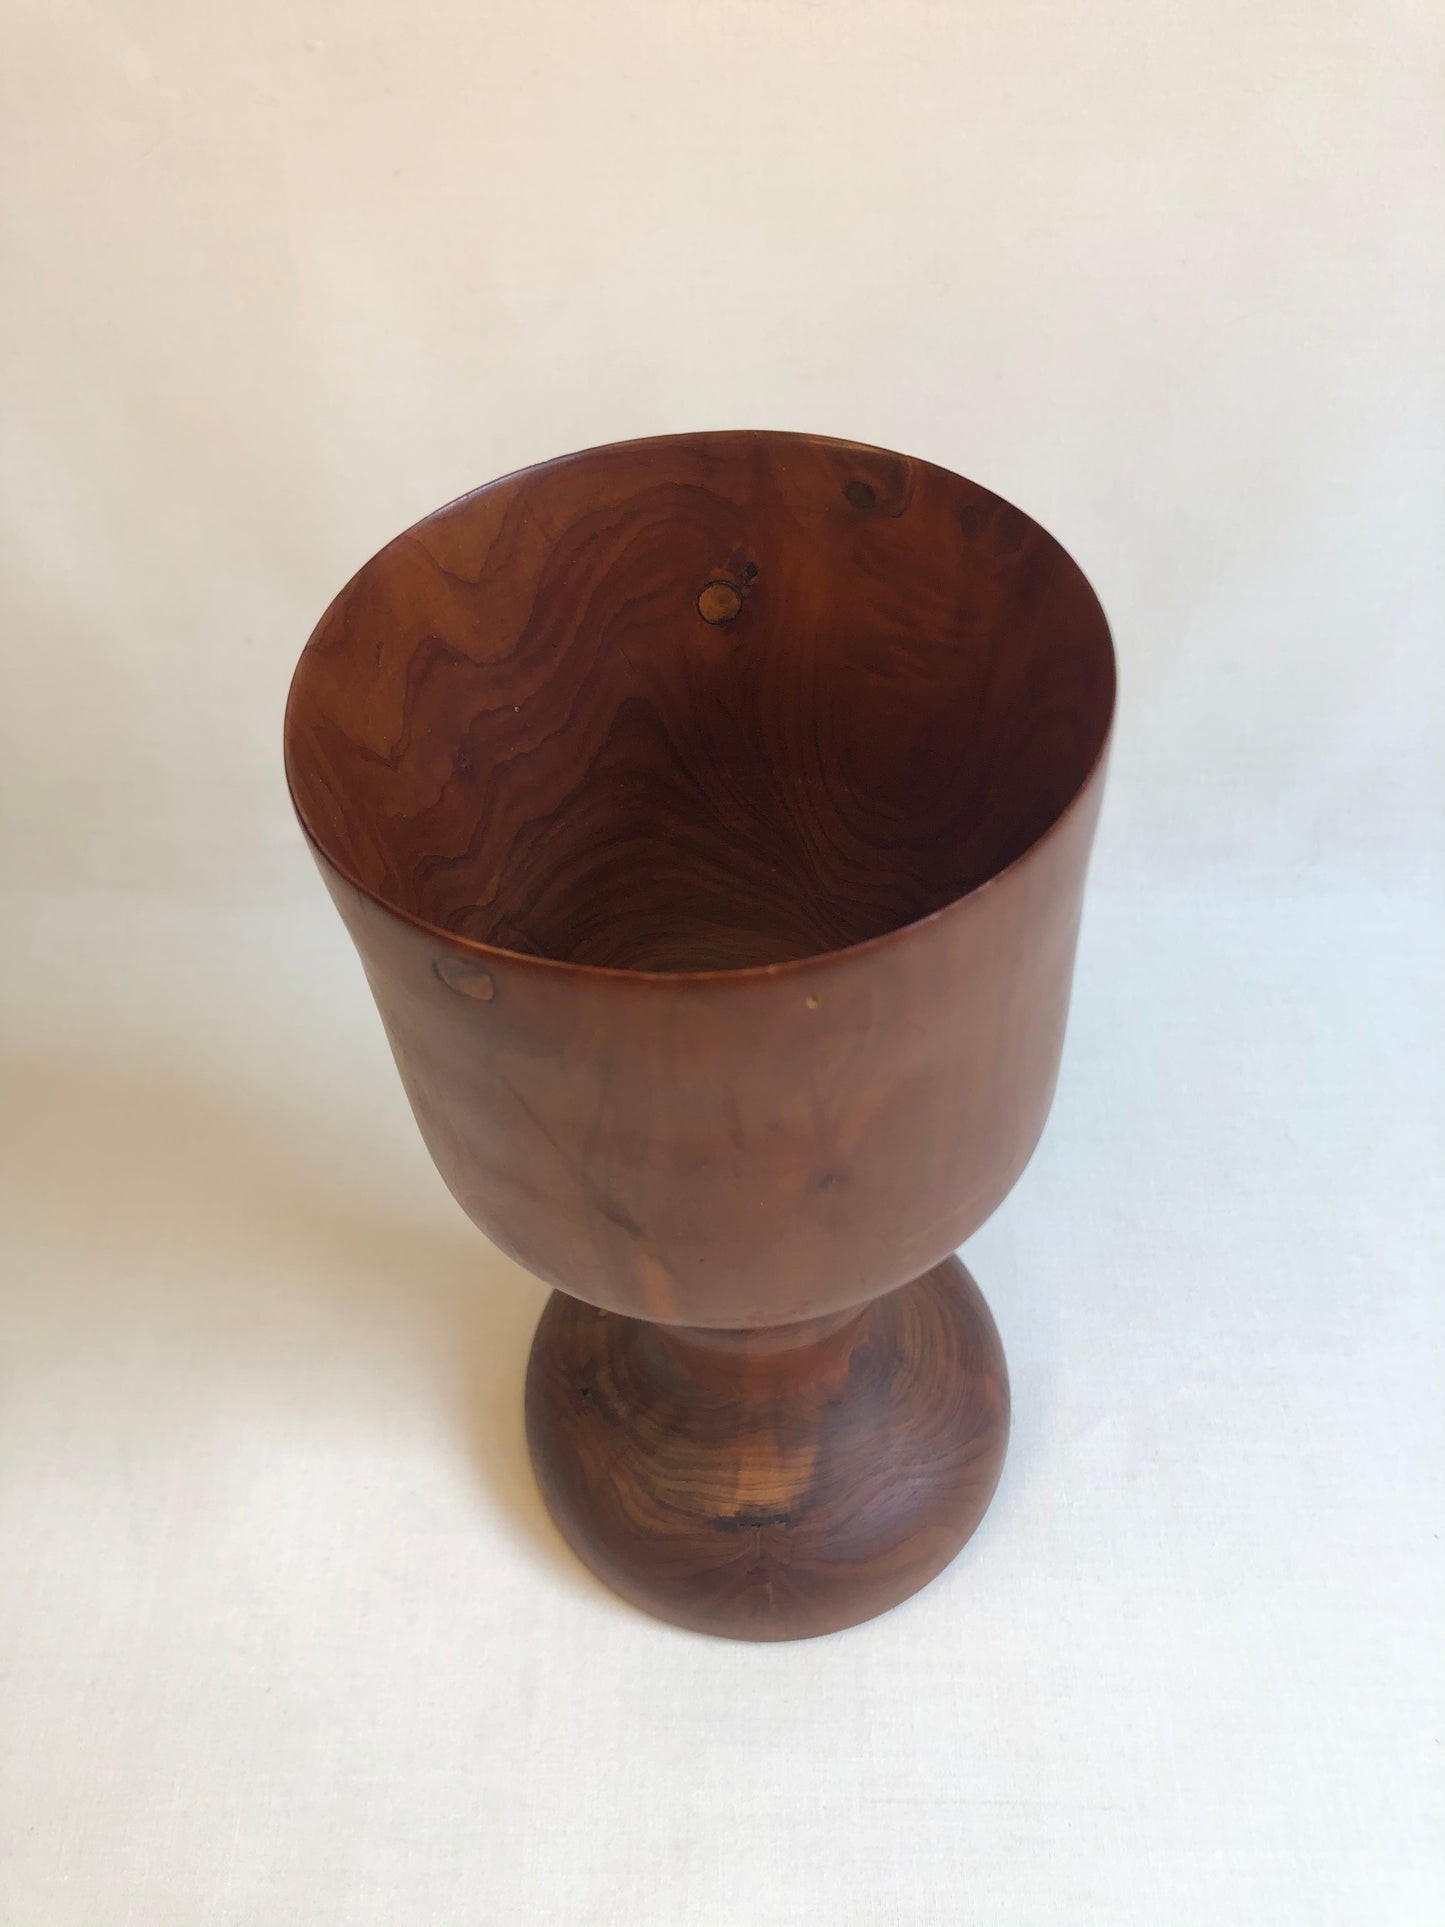 Wood Goblet